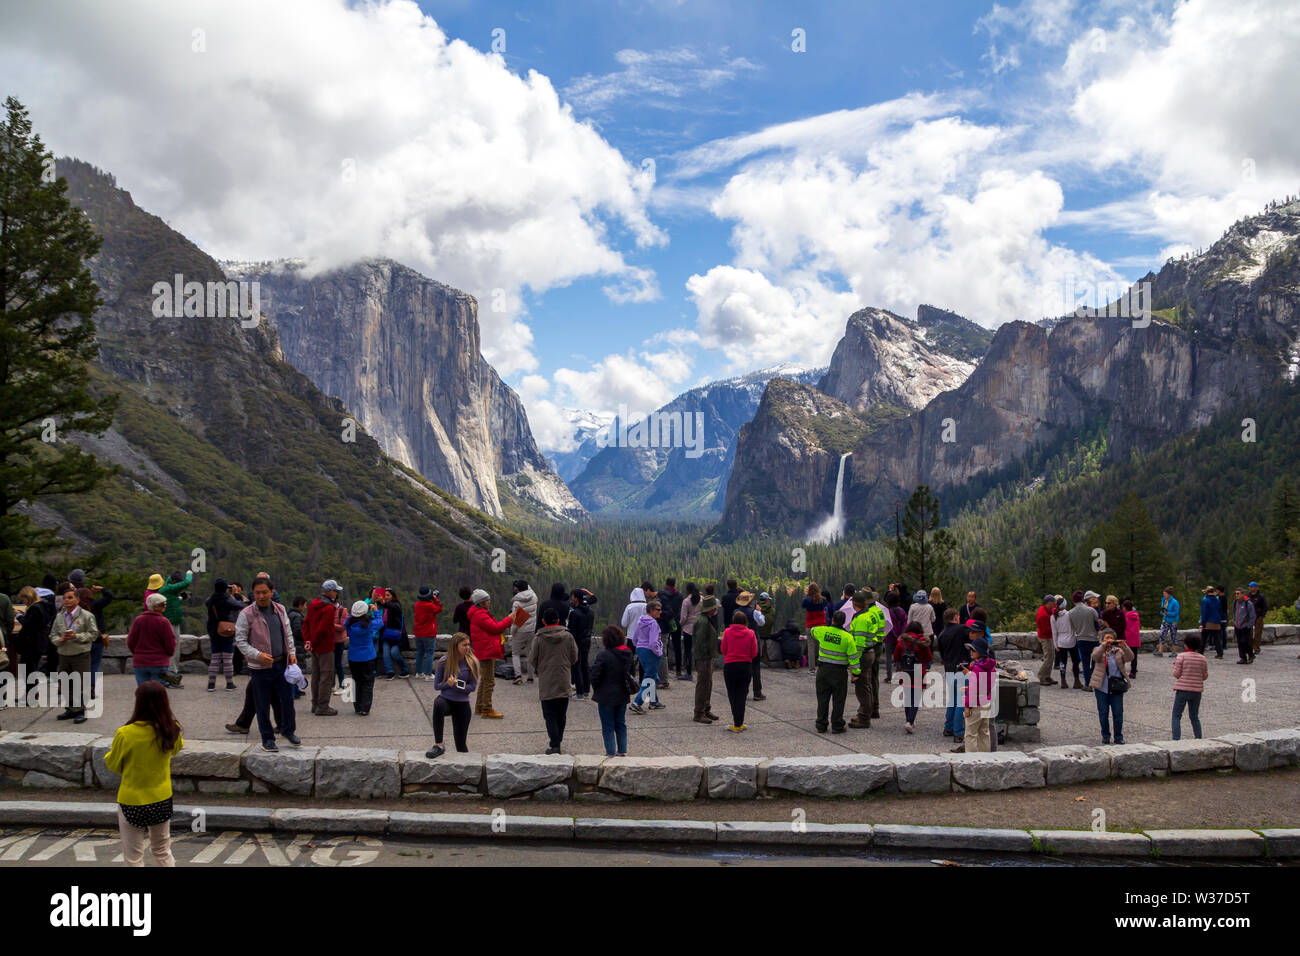 Die Menschen genießen die großartige Landschaft mit Bergen und Wasserfällen im Tunnel in Yosemite Nati Stockfoto